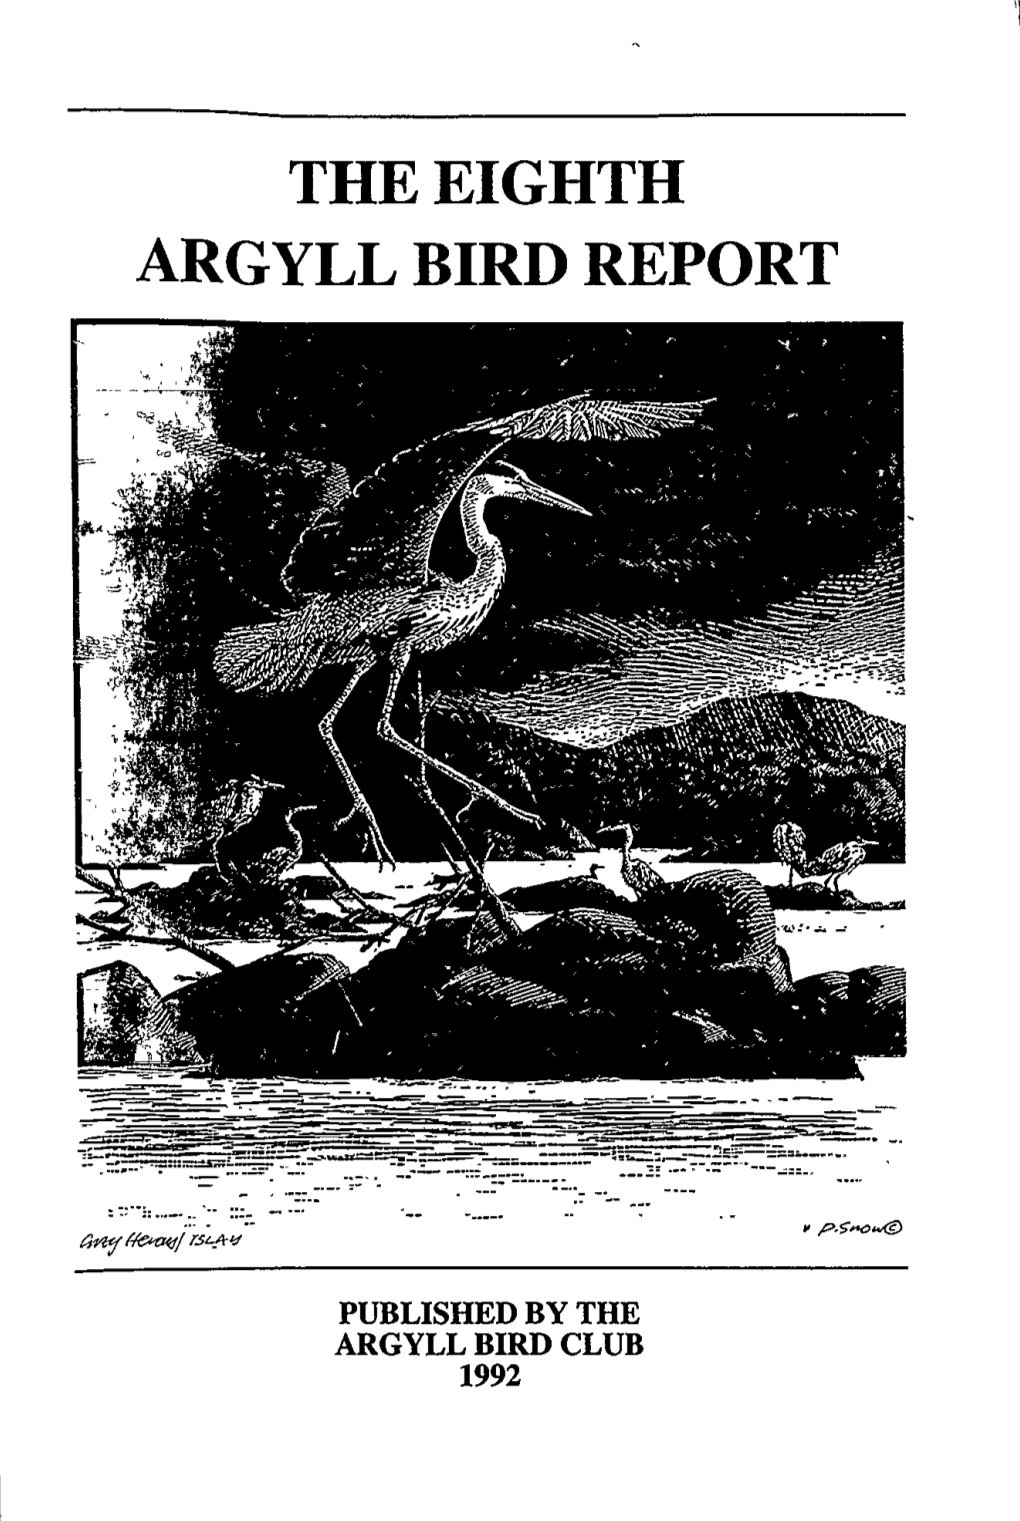 THE EIGHTH ARGYLL BIRD REPORT Argyll Bird Club